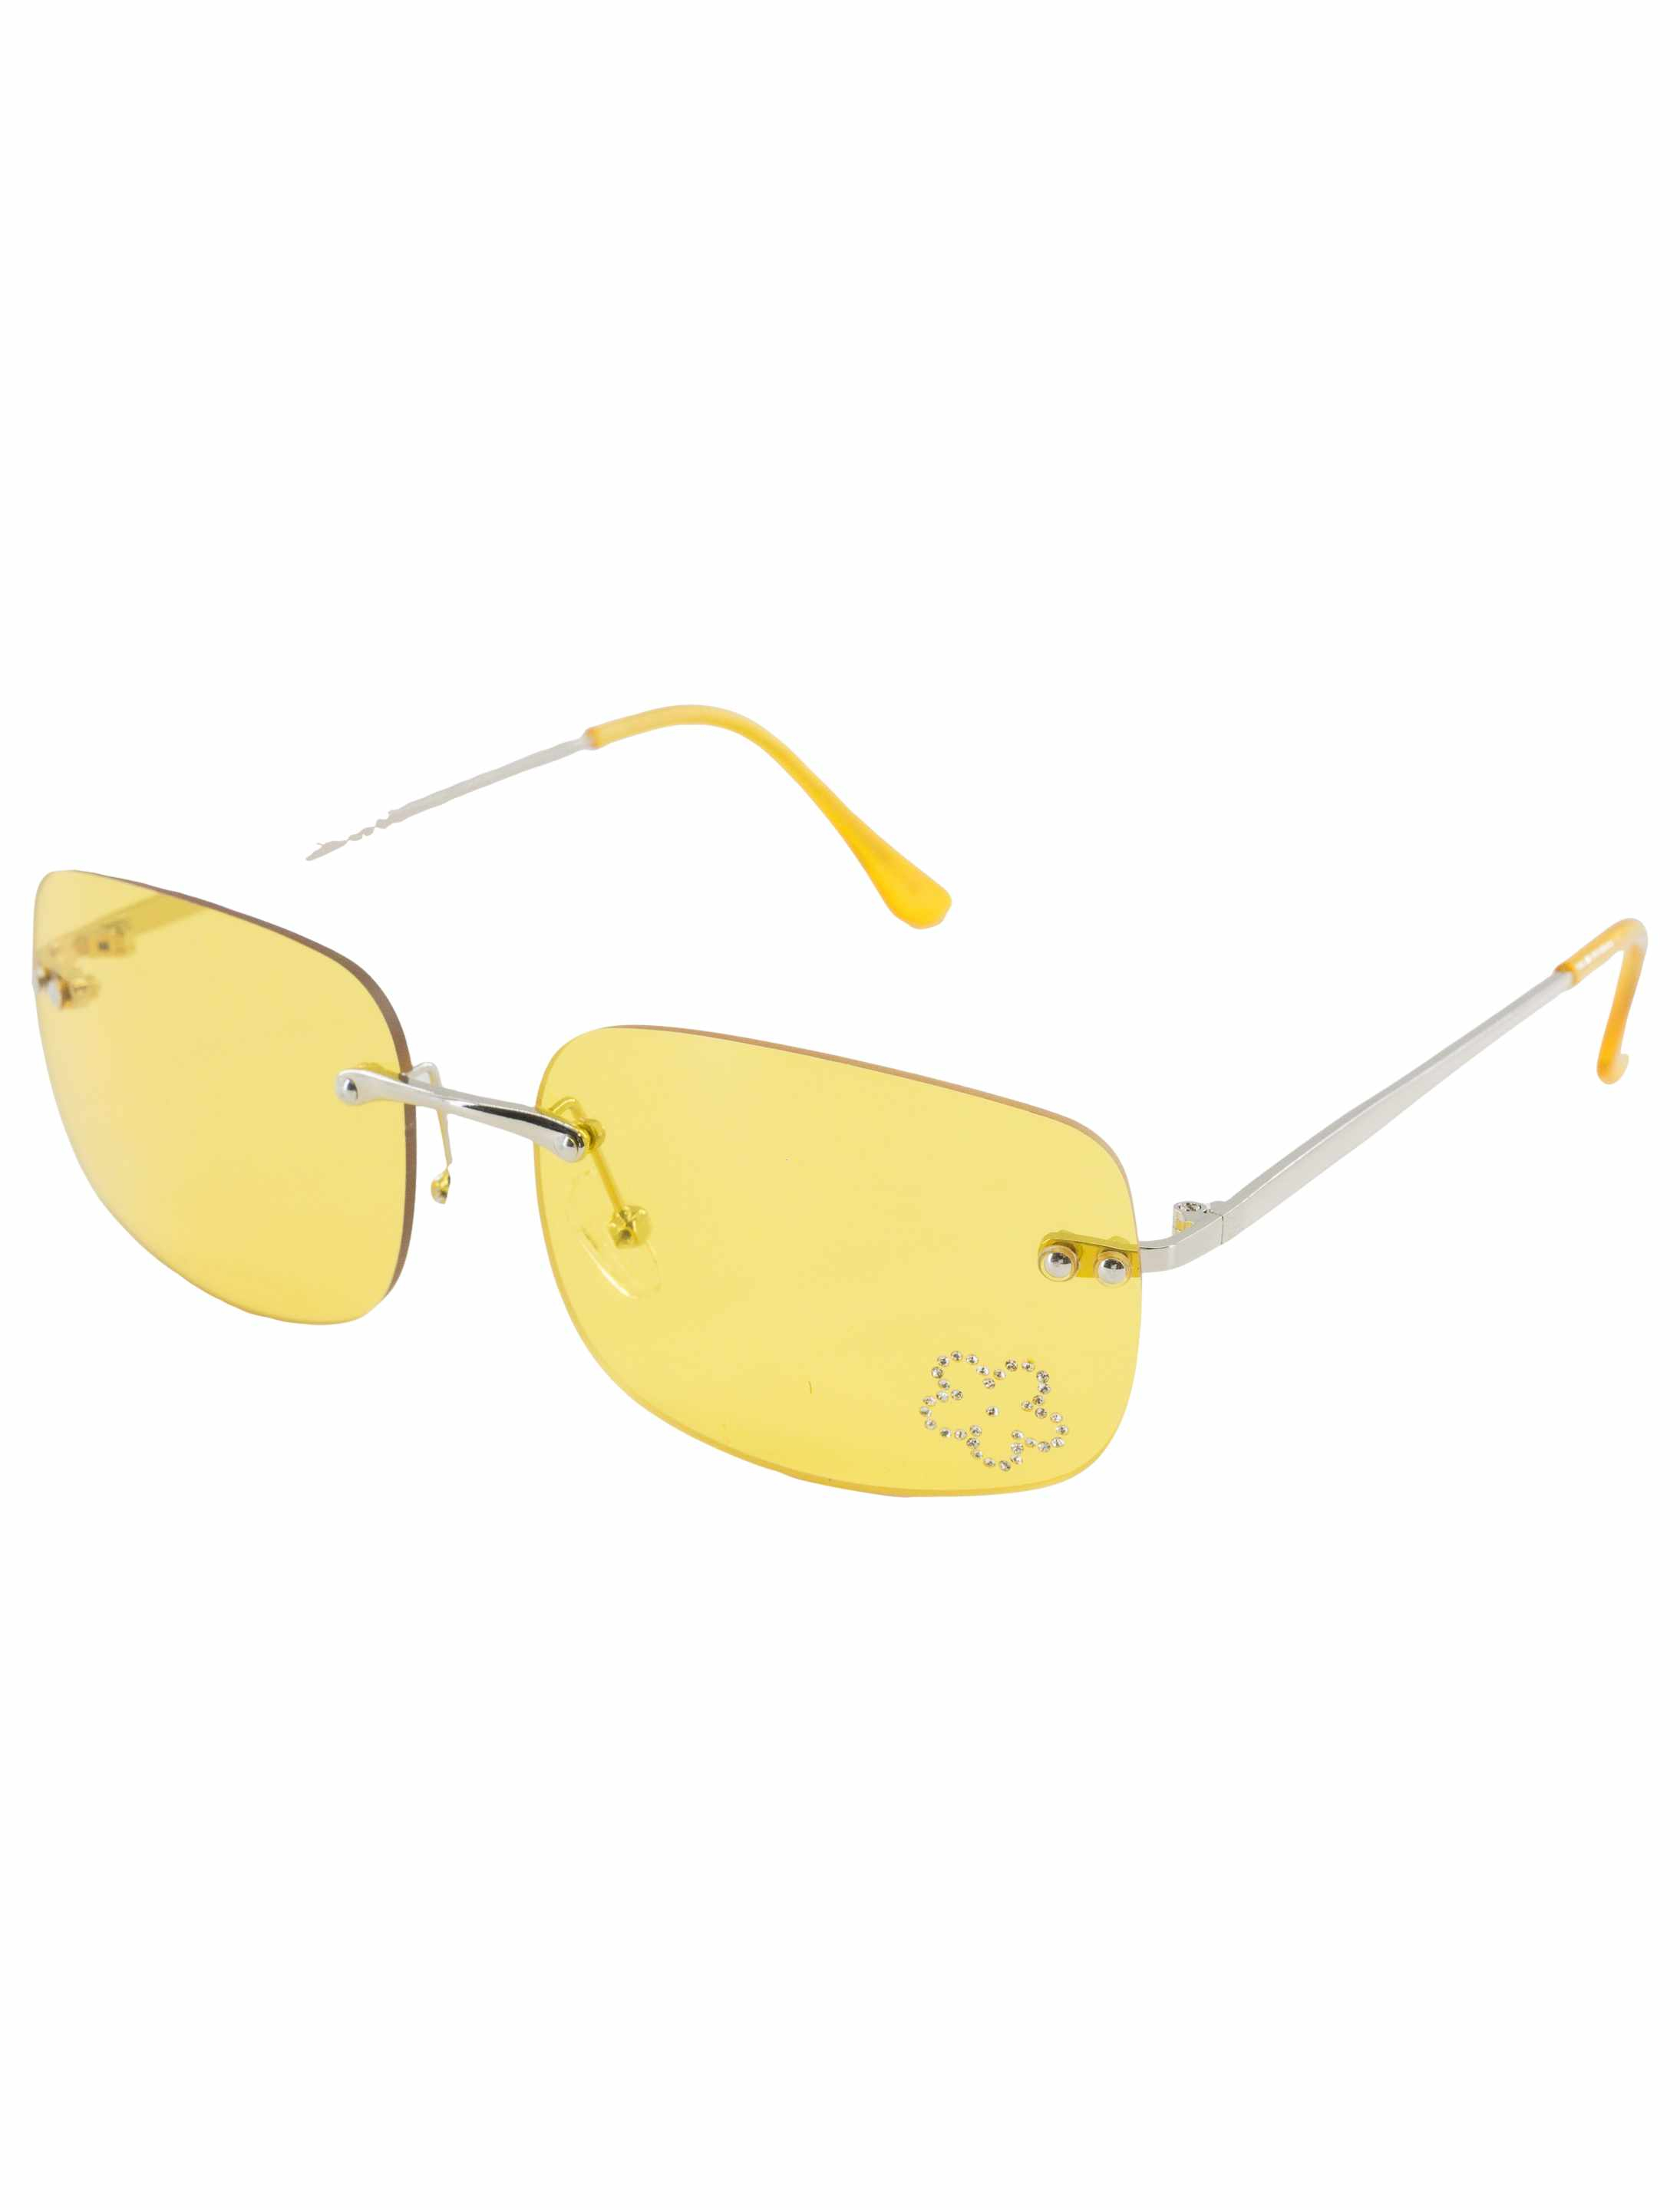 Brille mit Blumendiamant gelb